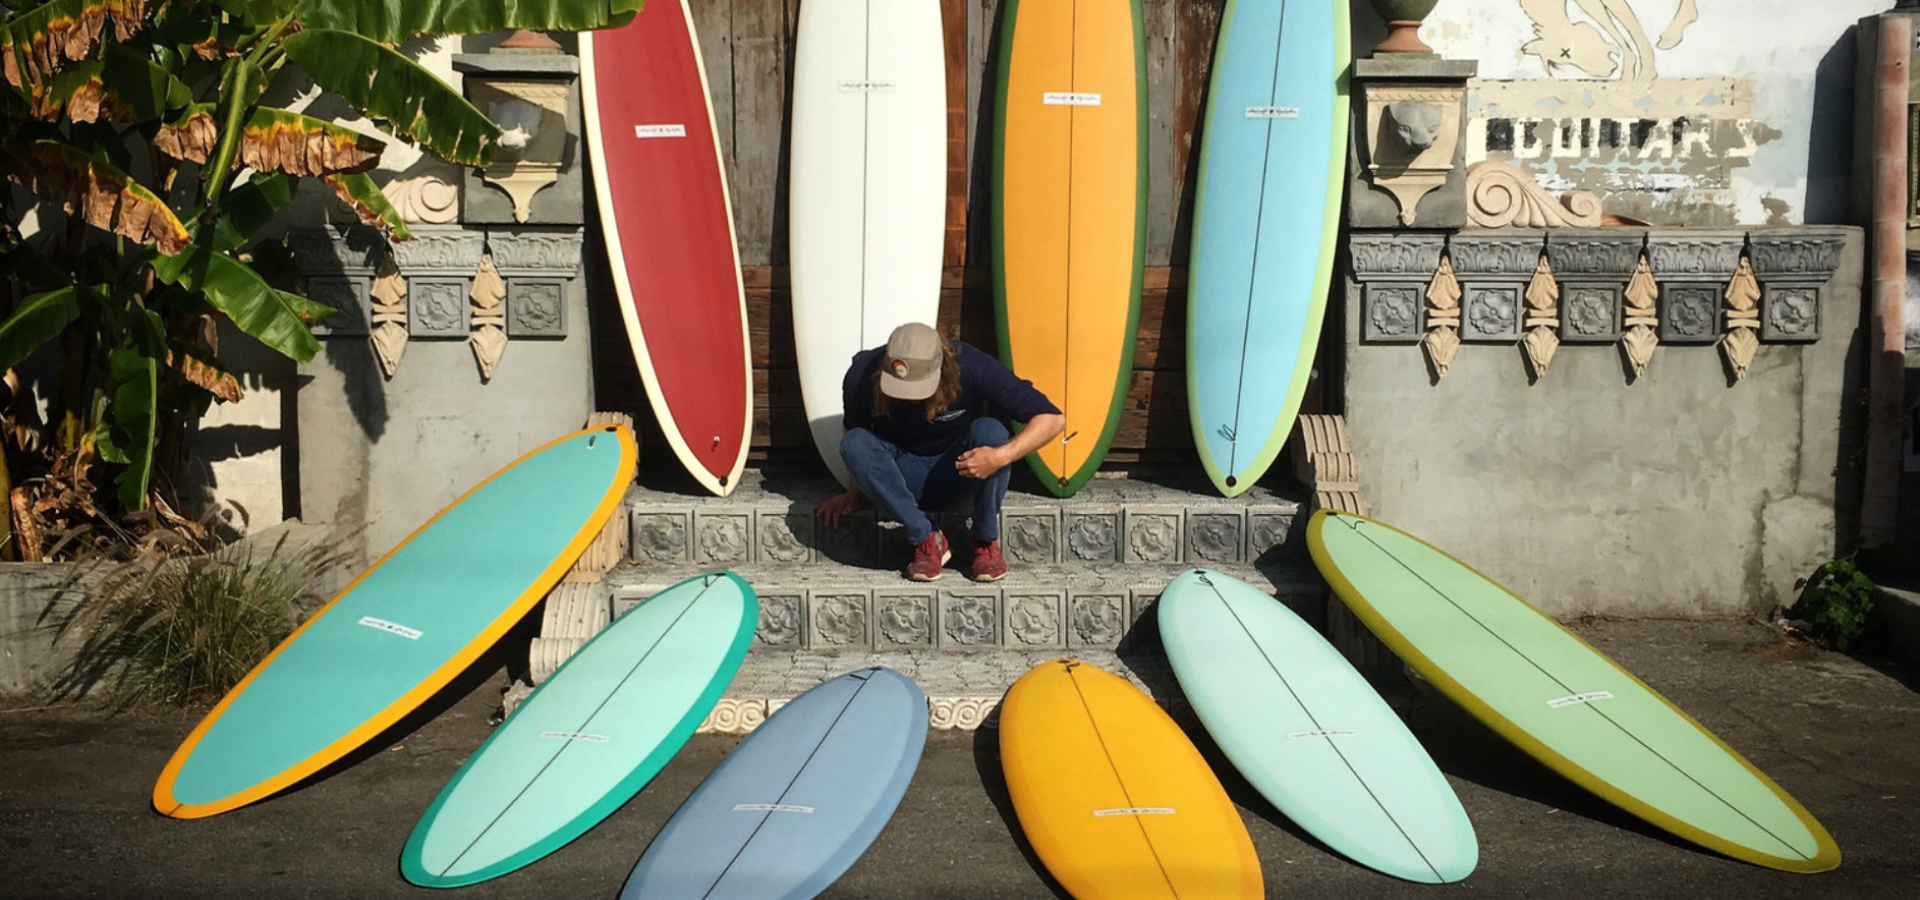 surfboard shaper Ryan Lovelace